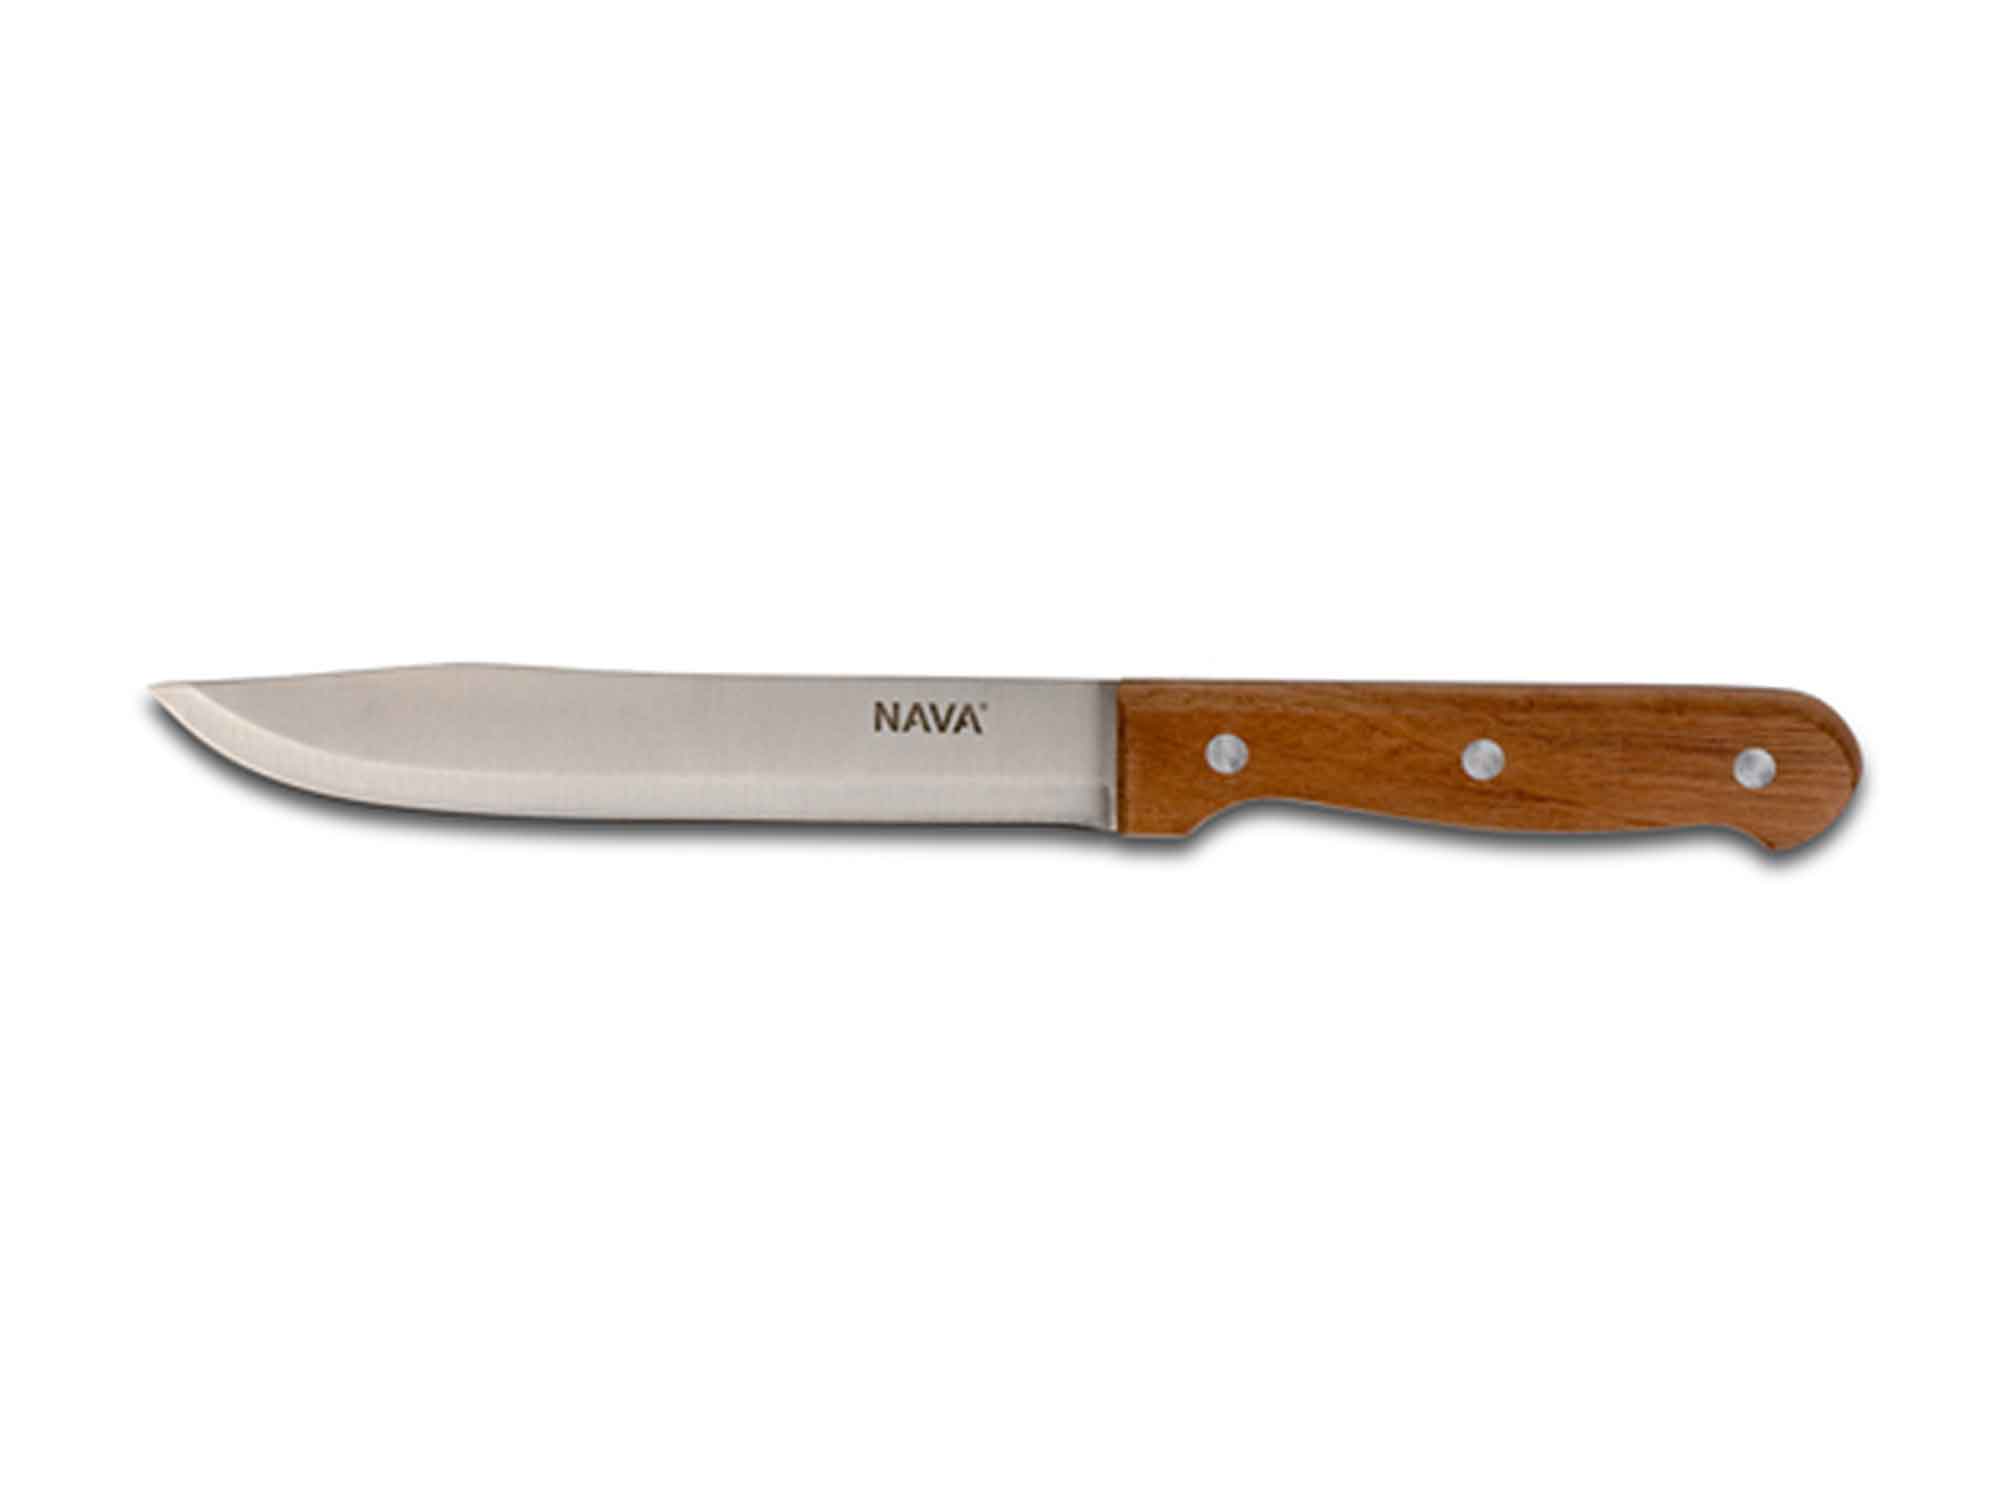 Դանակներ և աքսեսուարներ NAVA 10-058-046  S.S FOR BUTCHER 20CM 